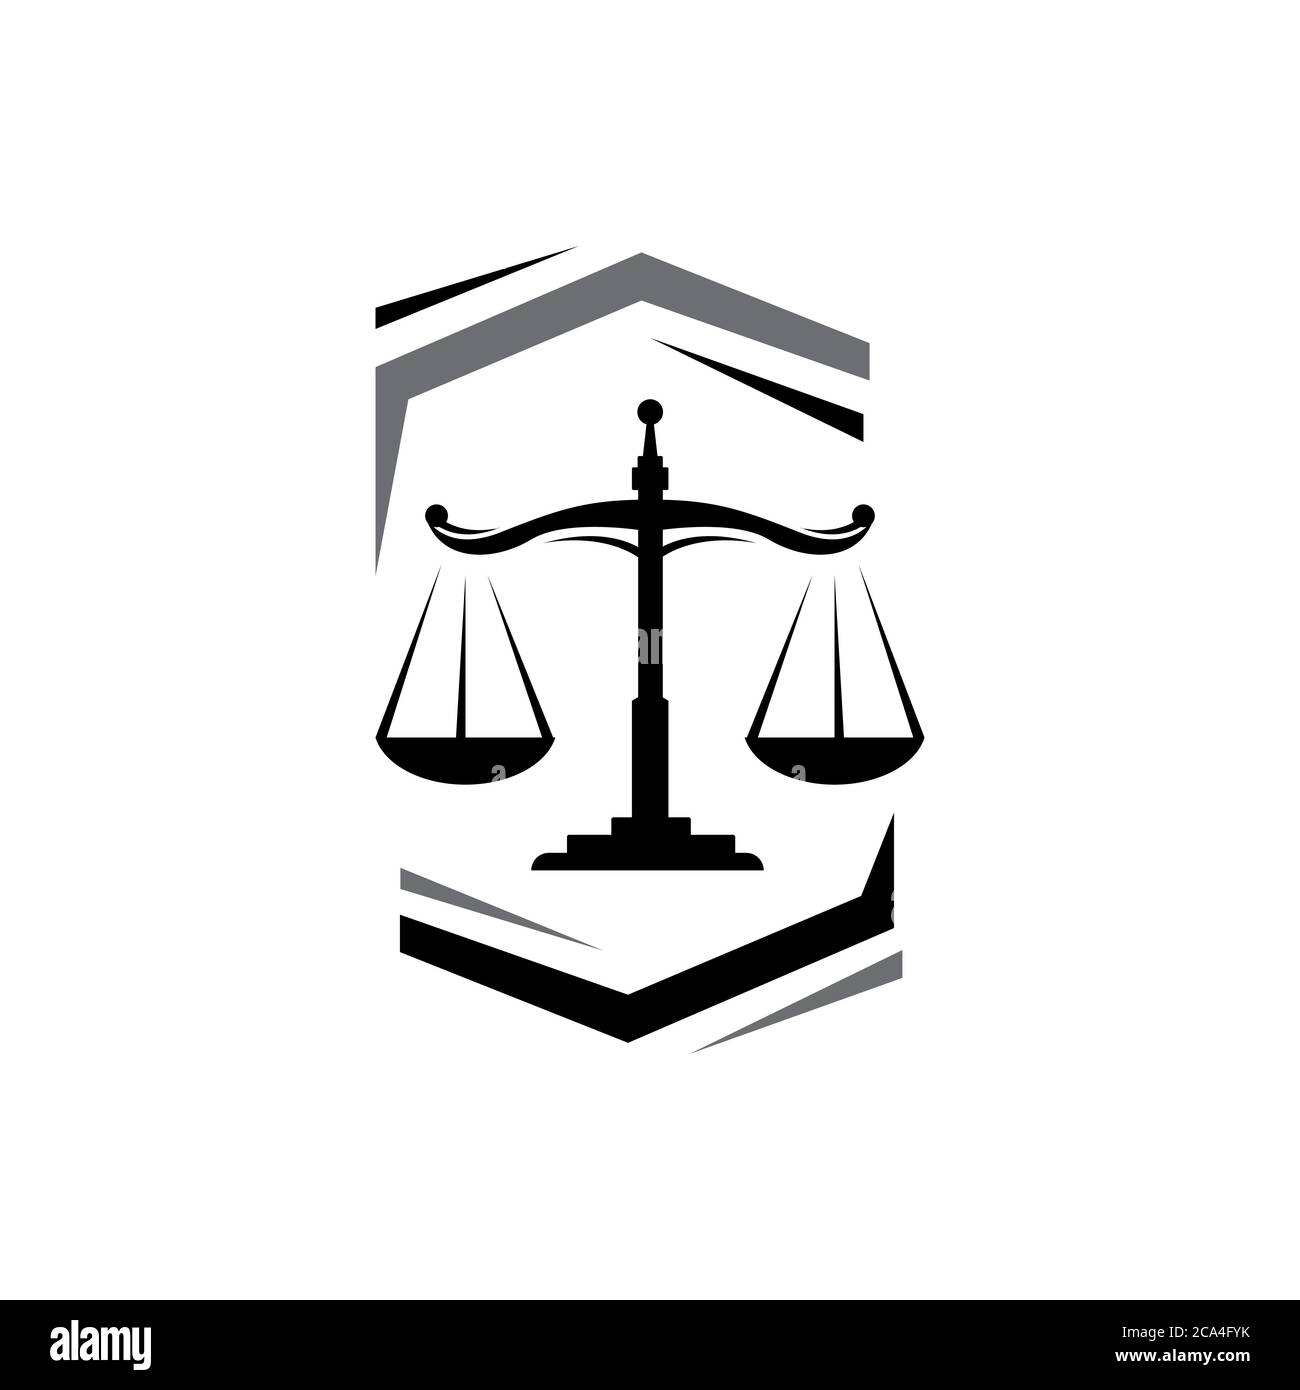 Un élégant pèse-personne de conception de logo de justice pour le droit lirm Office et les services d'avocat Illustration de Vecteur